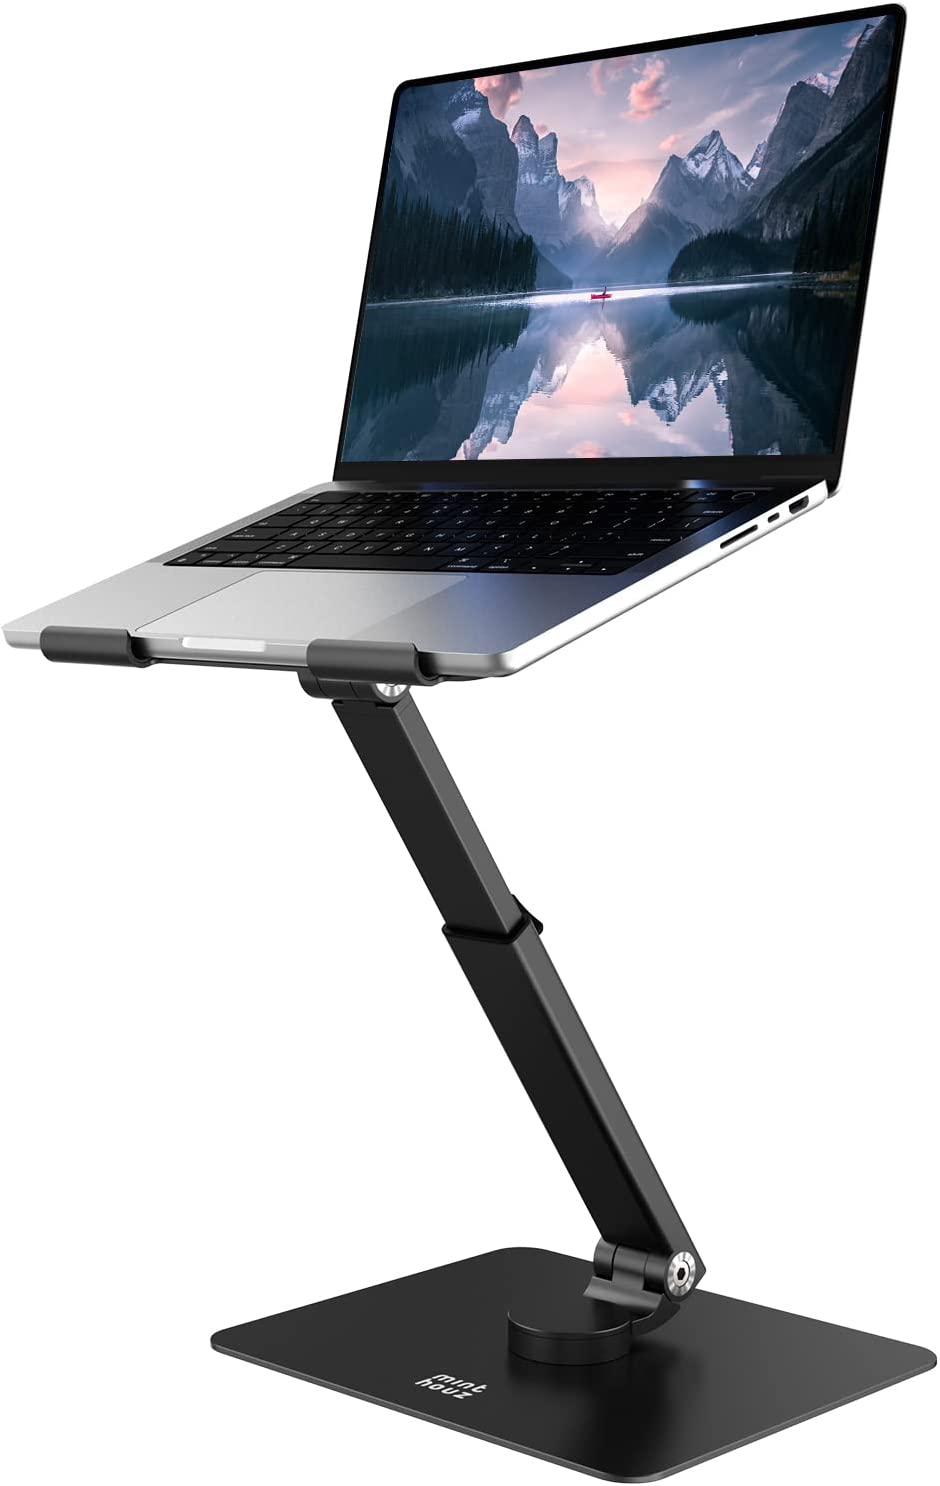 ラップトップスタンド【Minthouz 】ノートパソコンスタンド、360°回転ベース、人間工学設計、角度高さ調節可能、折りたたみ式、コンピューターライザー、オフィス作業/レクリエーション、MacBook Pro/Air、ラップトップ10/15/17インチに対応‐ブラック